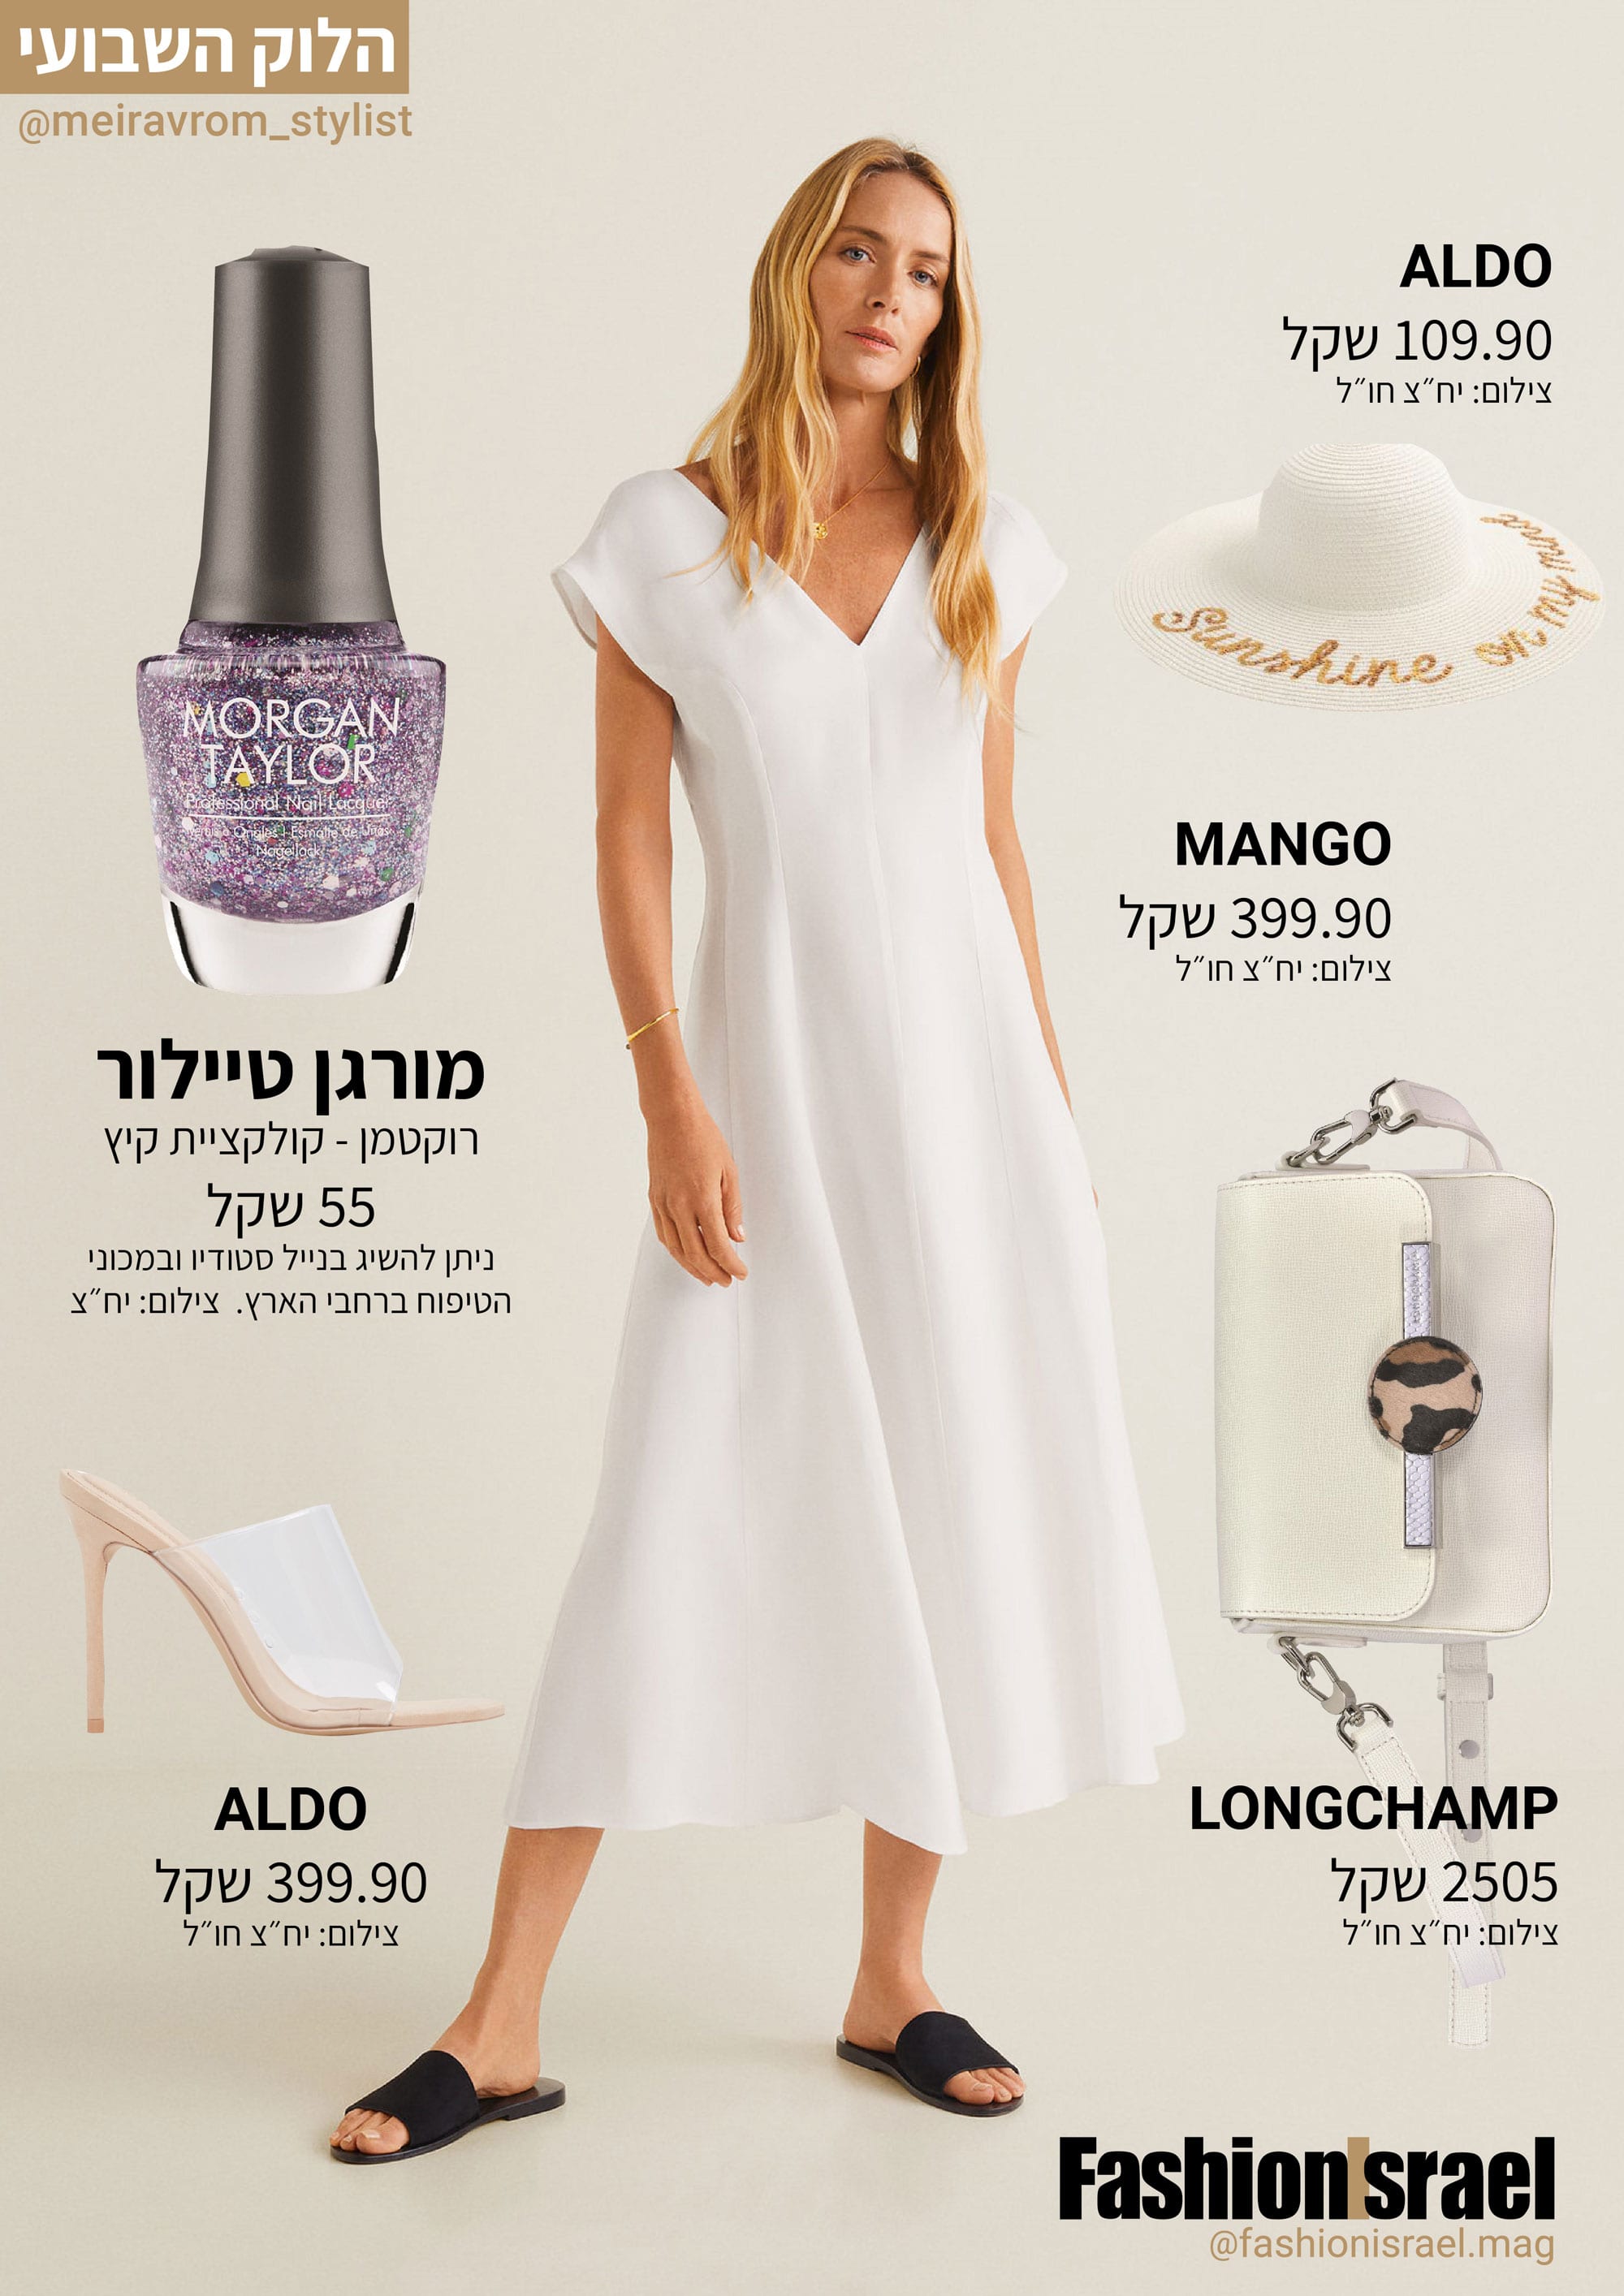 שמלה לבנה של מנגו, כובע קש של אלדו, לק מורגן טיילור קולקציית קיץ רוקטמן, נעליים לבנות ALDO. תיק לאישה, LONGCHAMP. חג שבועות לבן, יפה וטרנדי - Fashion Israel - מגזין אופנה של ישראל